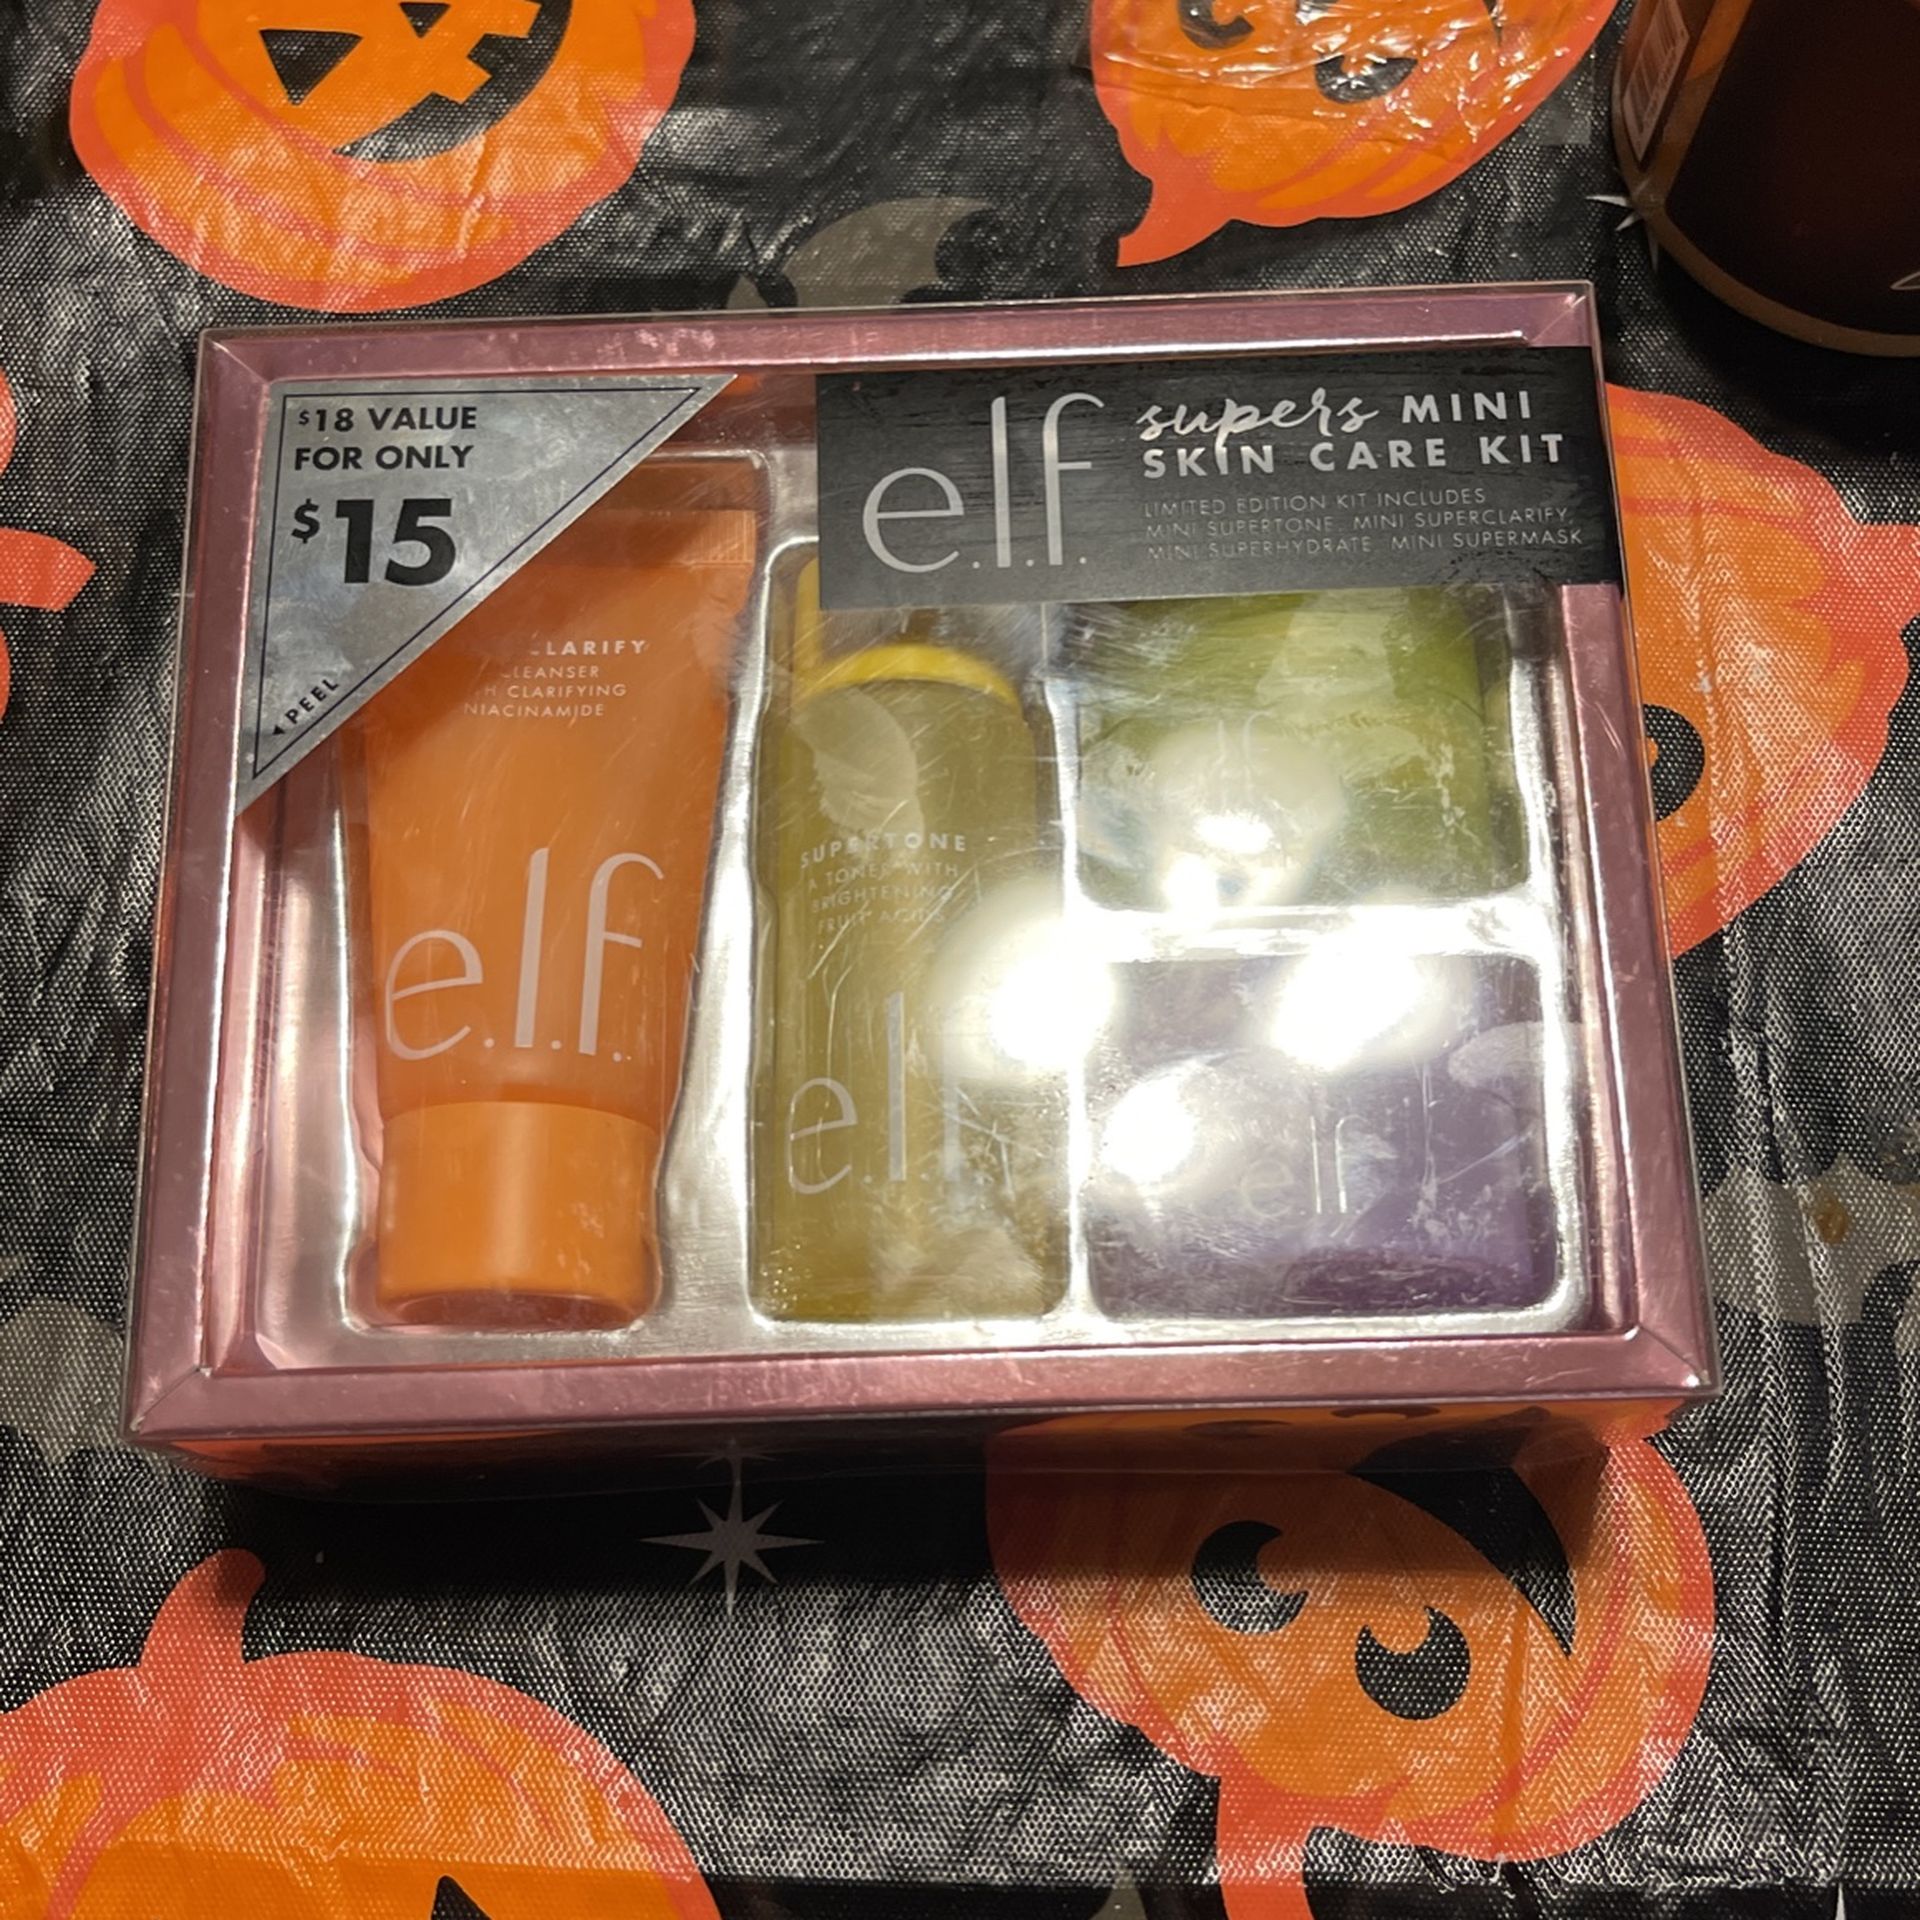 E.l.f Supers Mini Skin Care Kit 